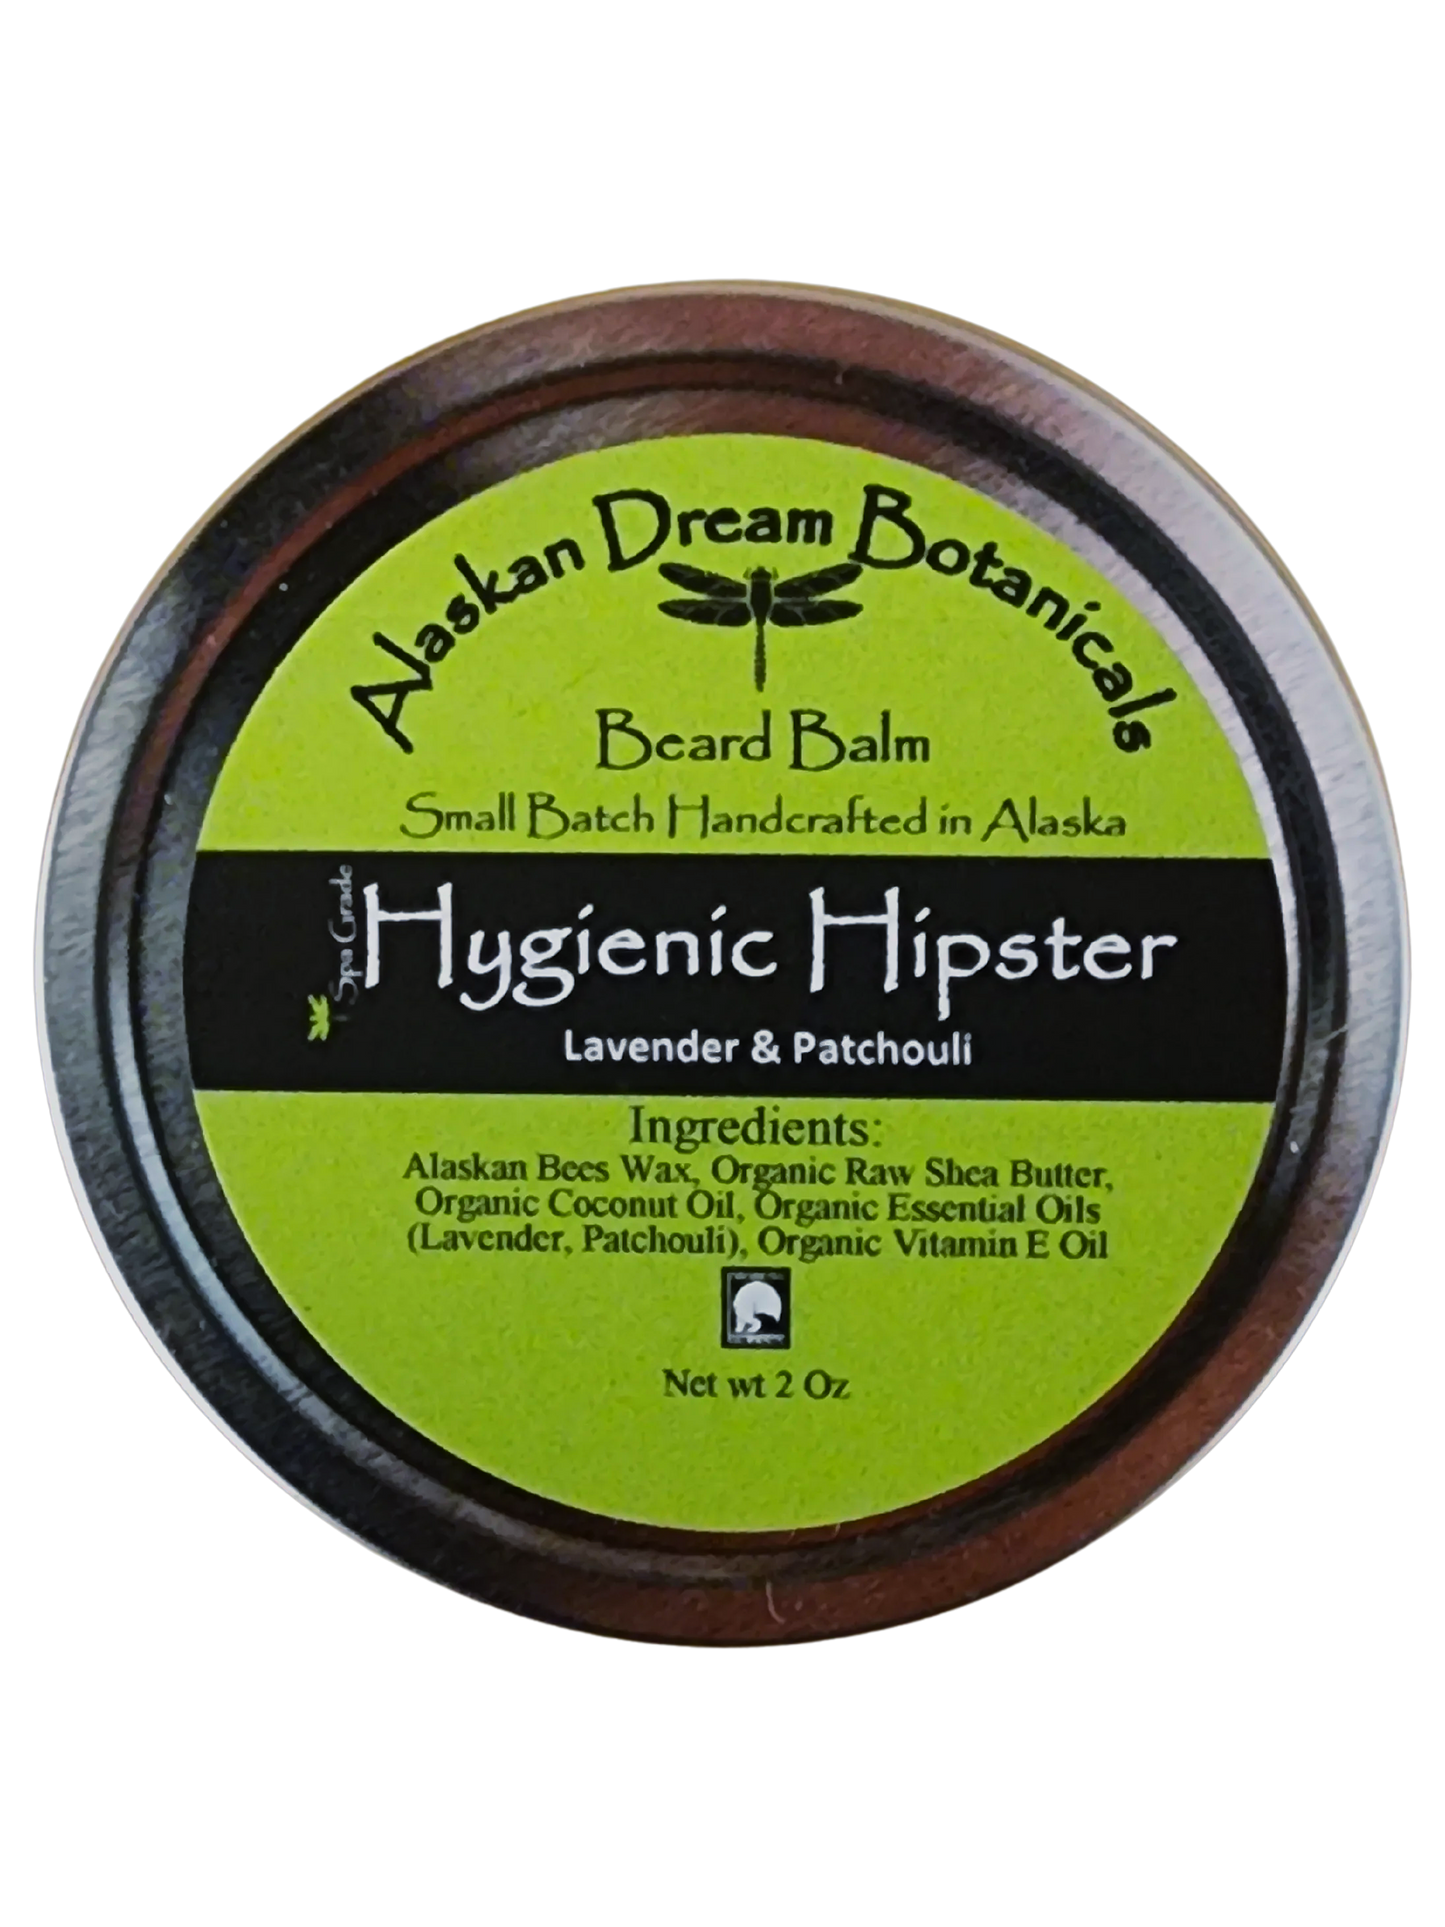 Hygienic Hipster Spa Grade Beard Balm - Alaskan Dream Botanicals